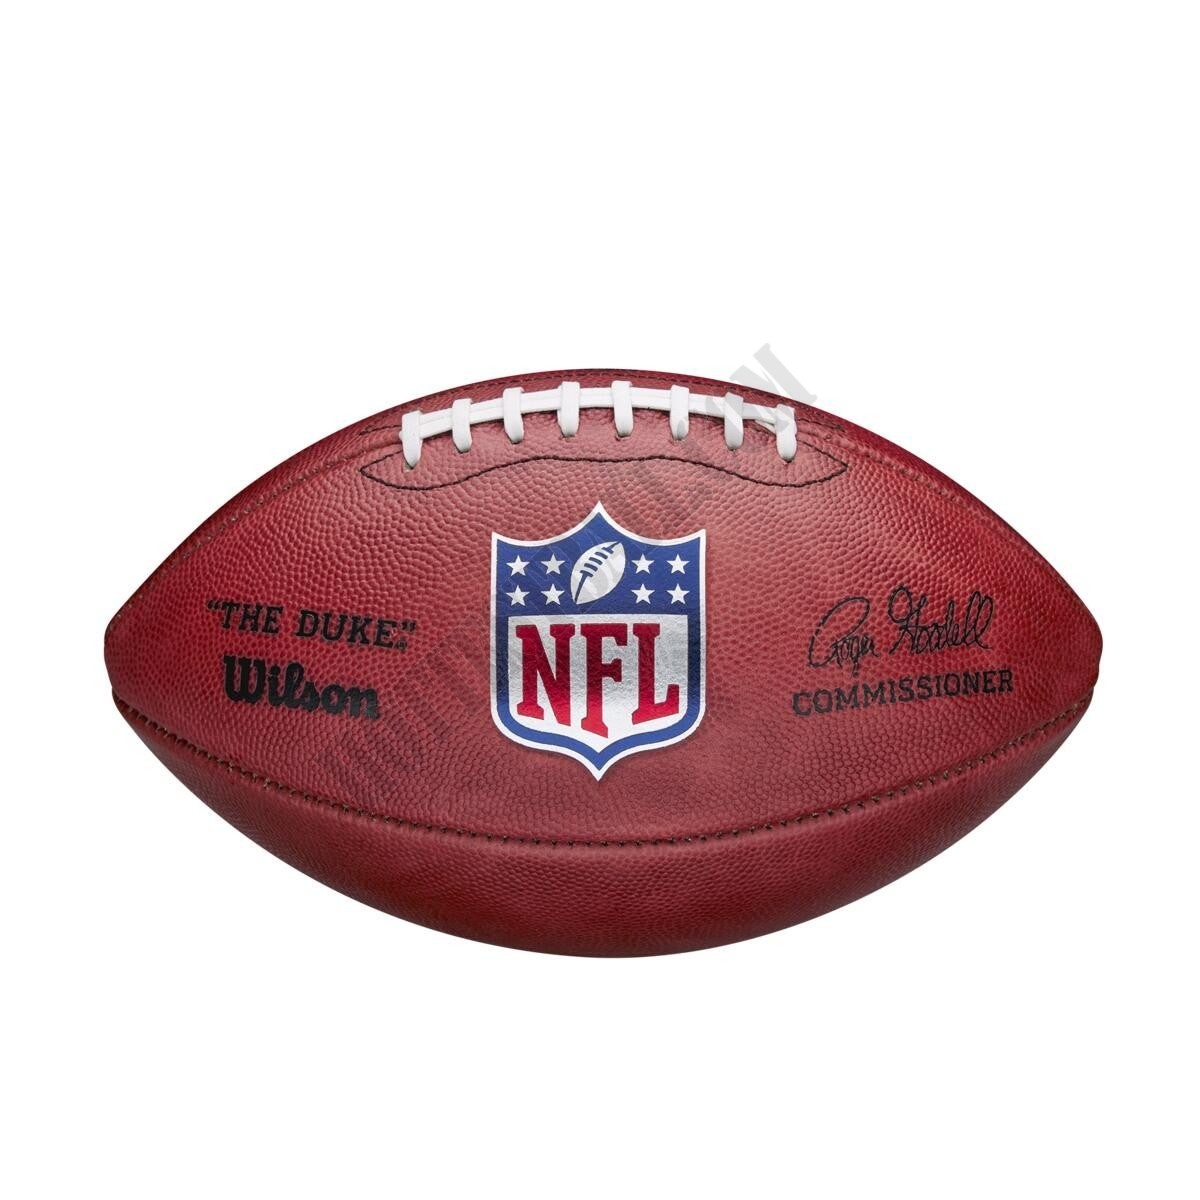 The Duke NFL Football ● Wilson Promotions - -0